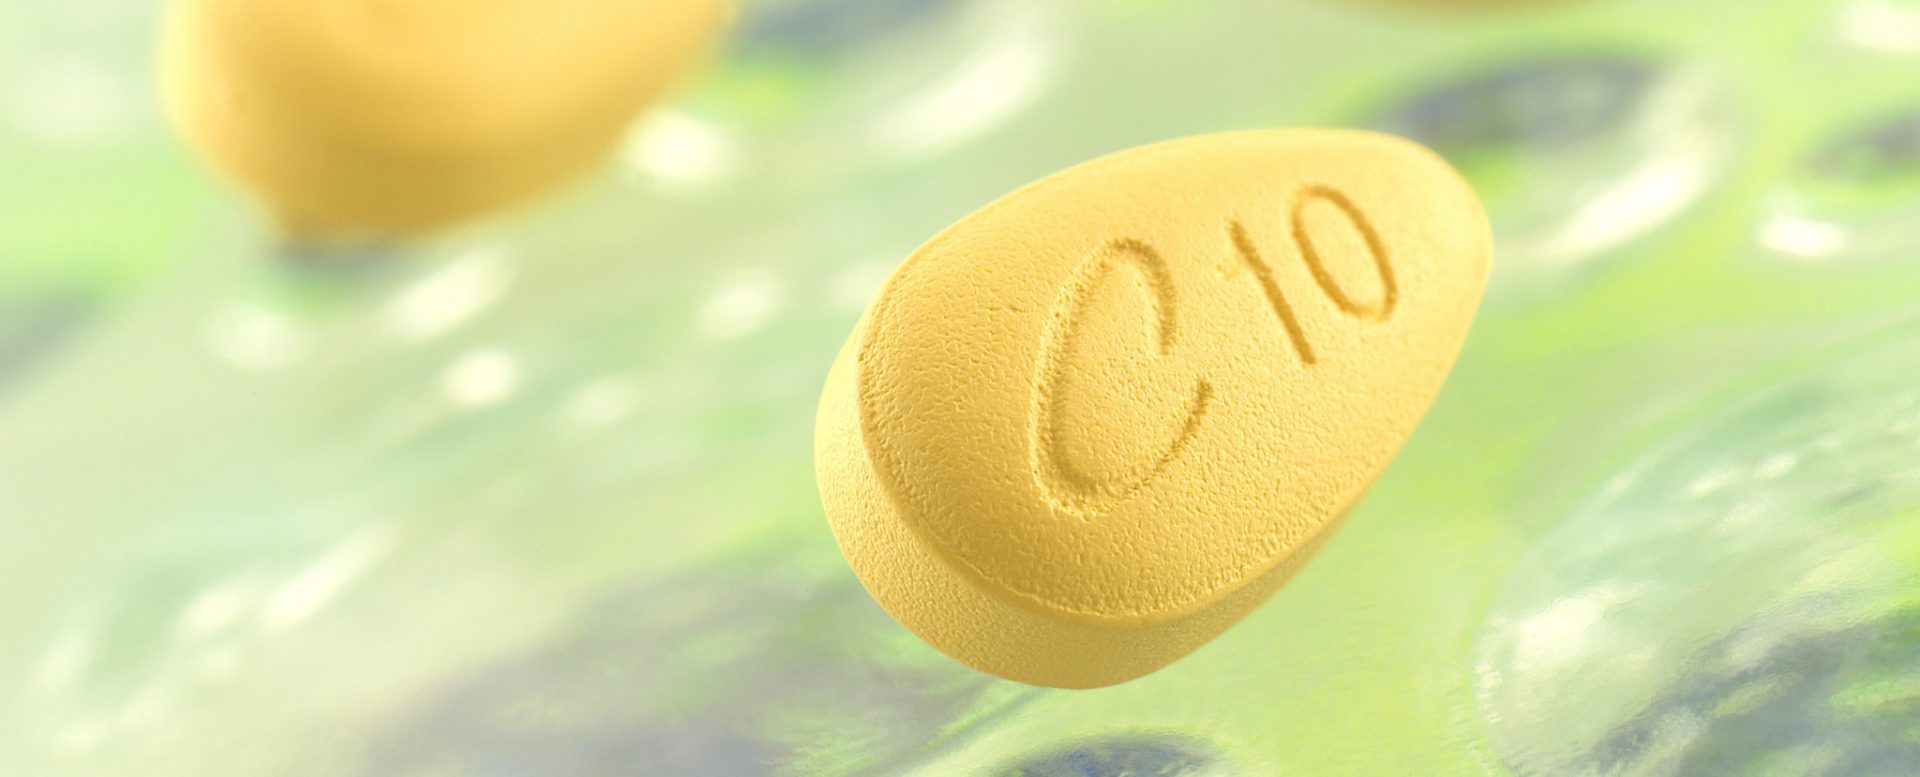 Cialis 20 mg kopen: nieuwe technologieën voor de behandeling van cariës. stomatologie